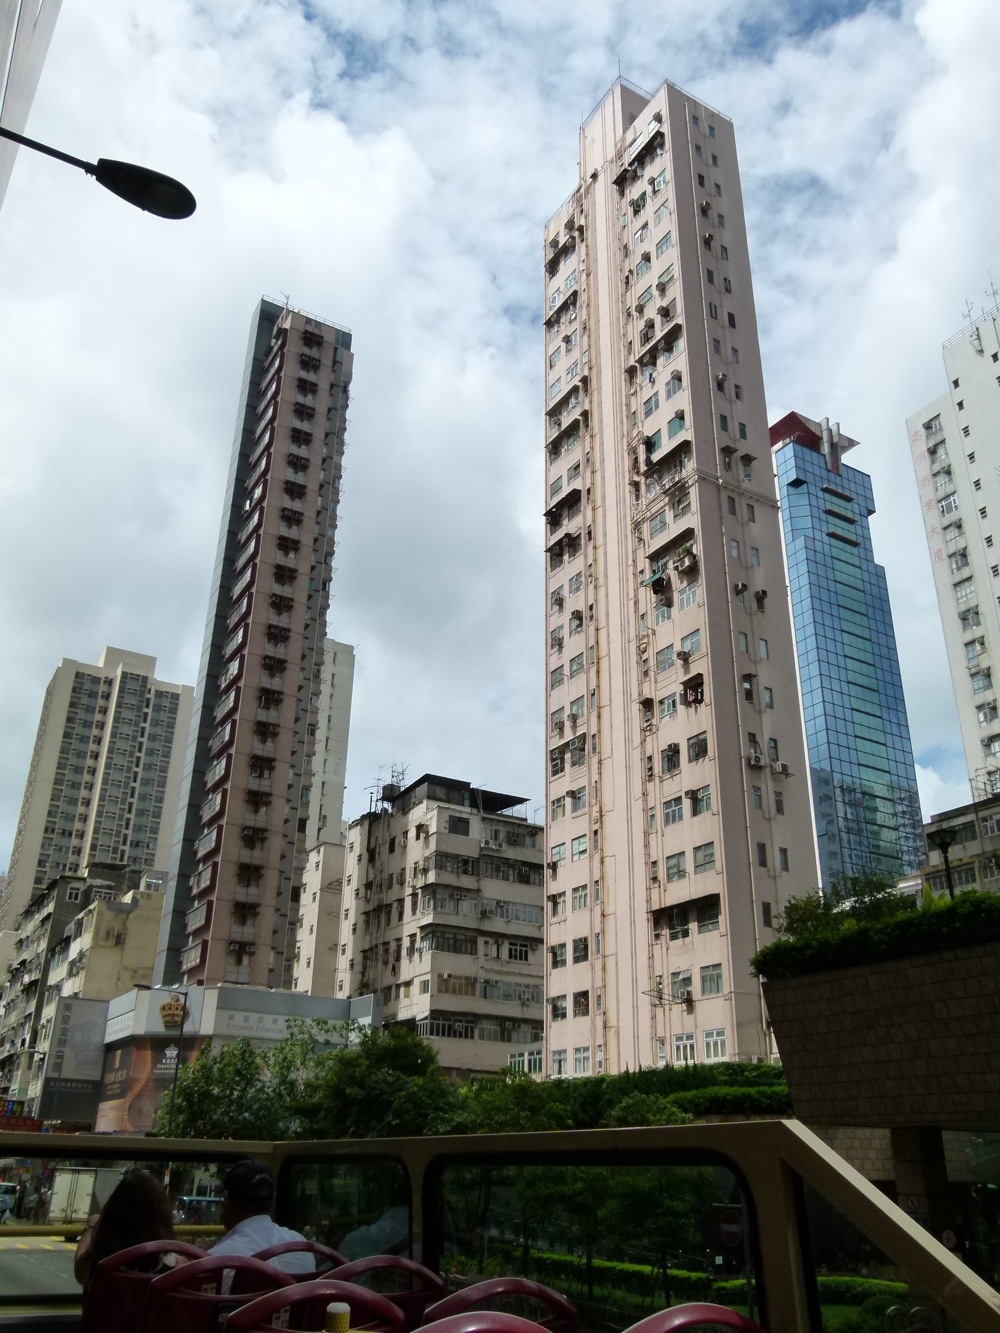 Незабываемый Гонконг (часть 1)